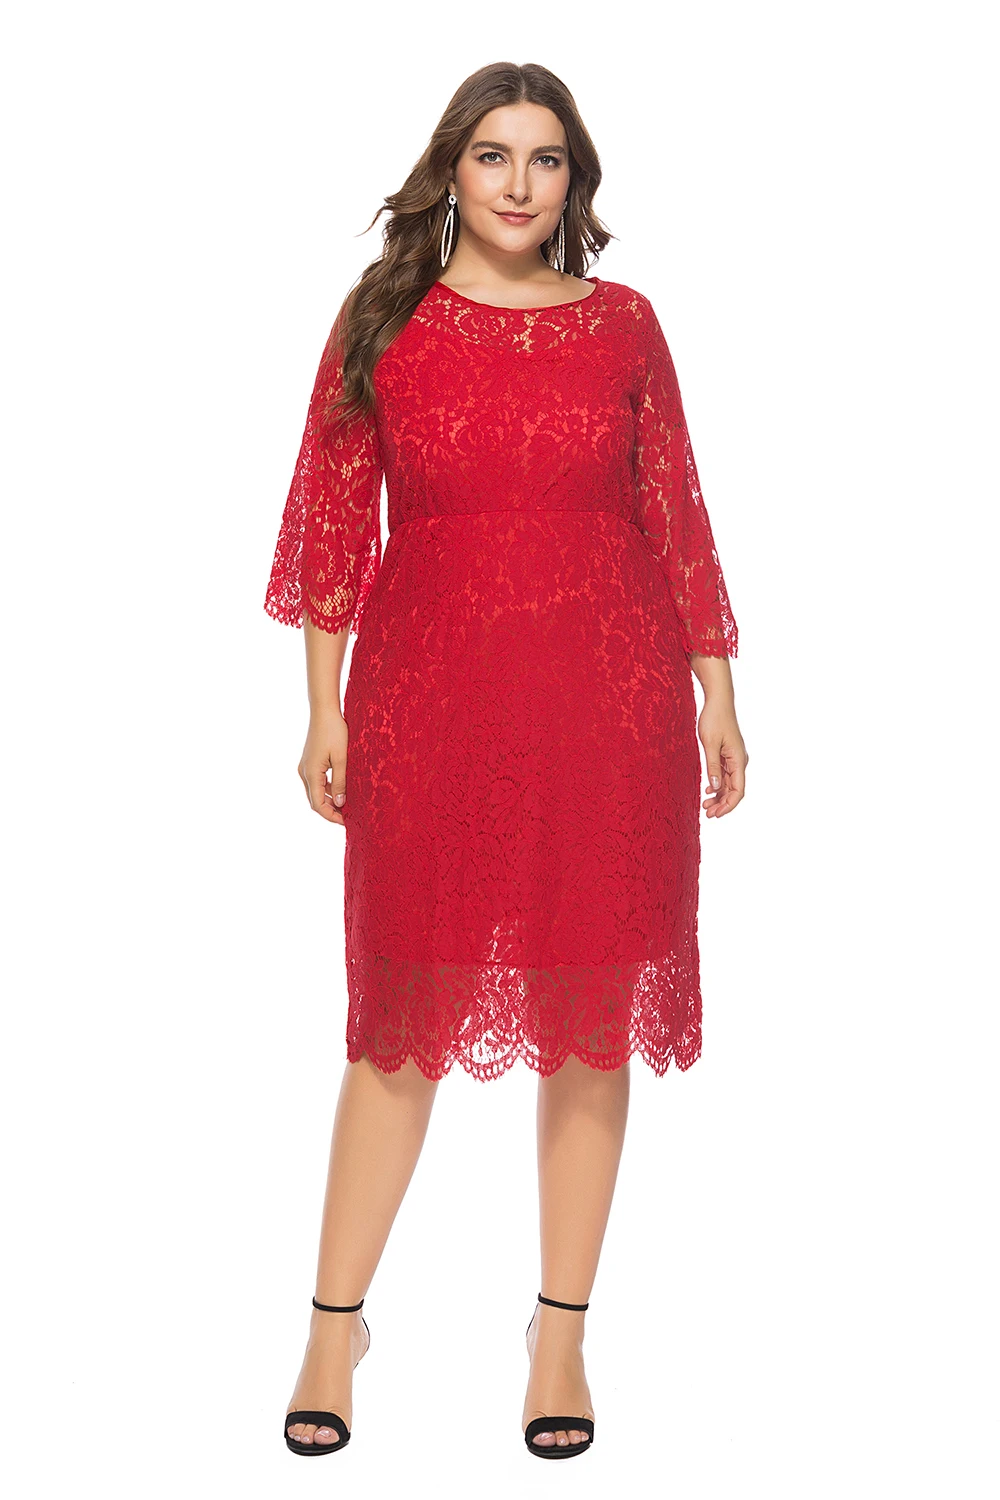 Недорогие платья красного размера плюс, элегантные кружевные короткие вечерние платья с круглым вырезом, вечерние платья, платья для вечеринок, Robe De Soiree